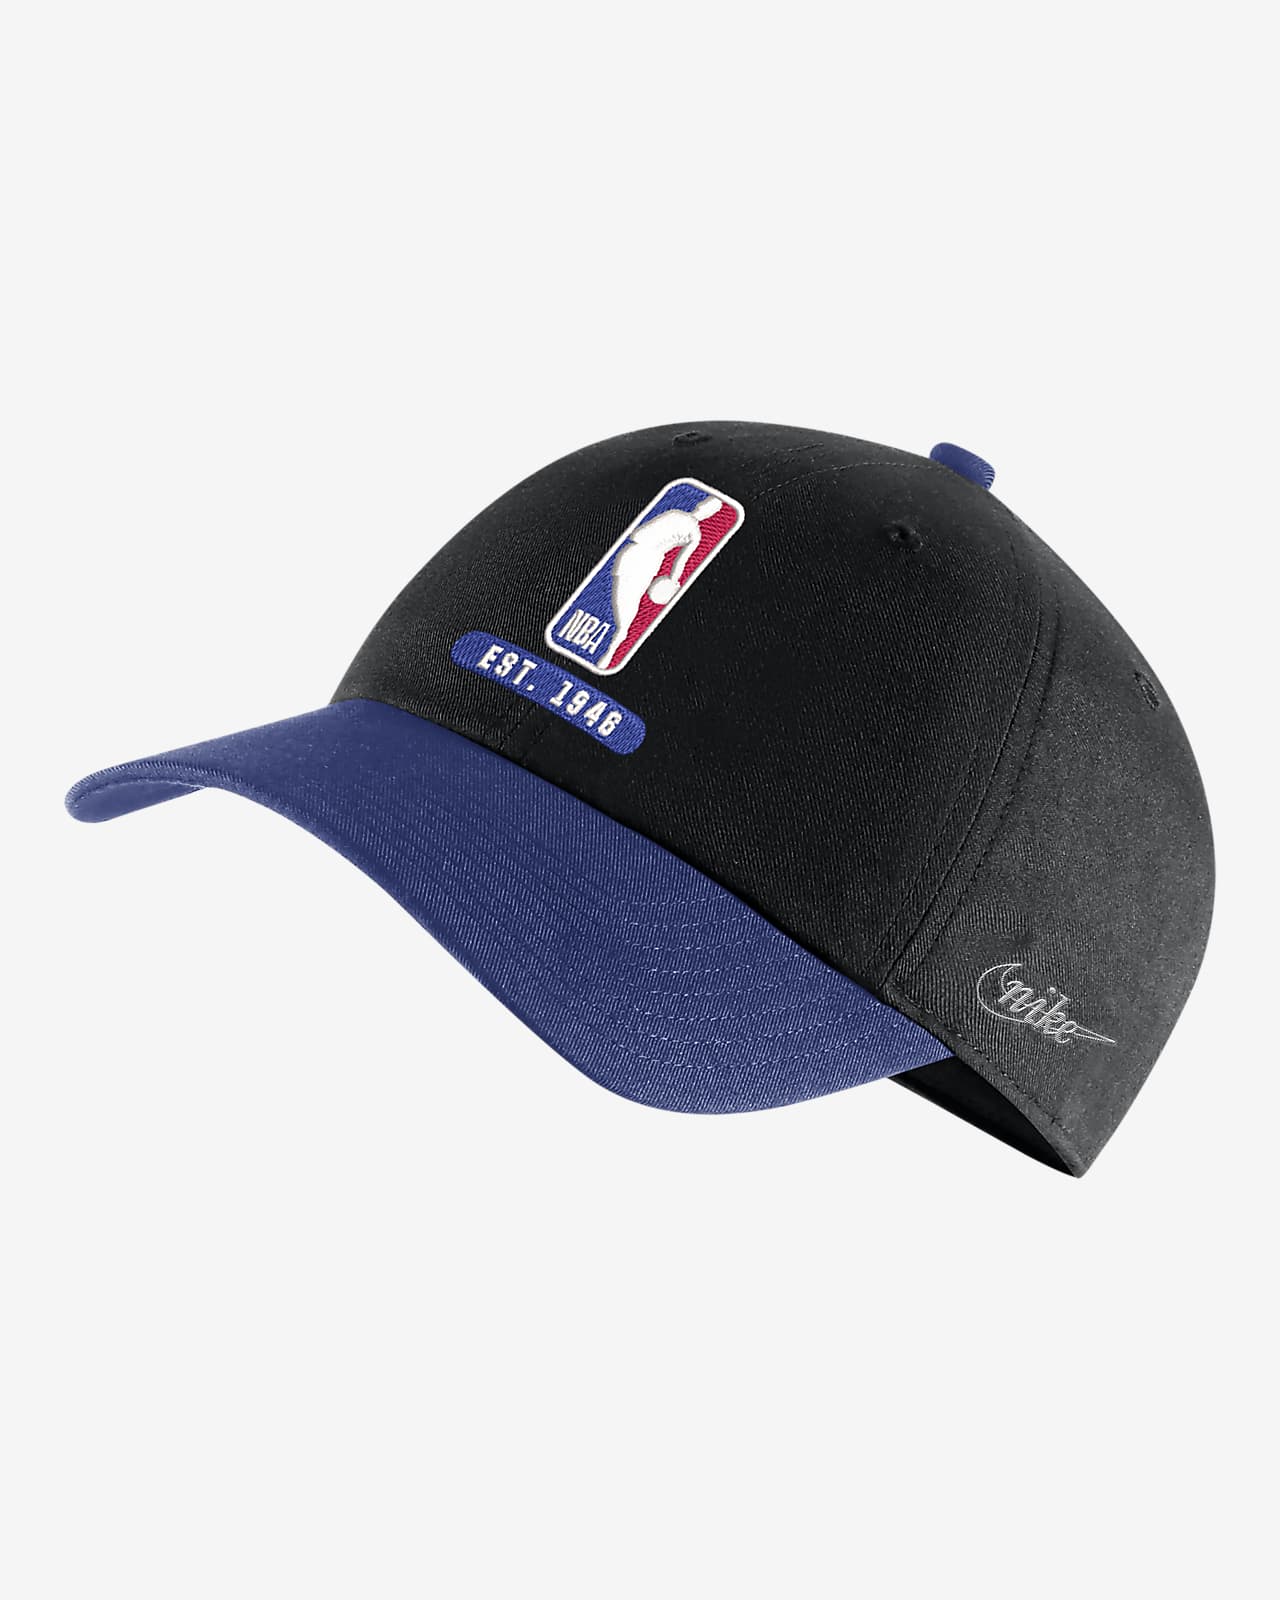 NBA Heritage86 Icon Edition Nike NBA Cap